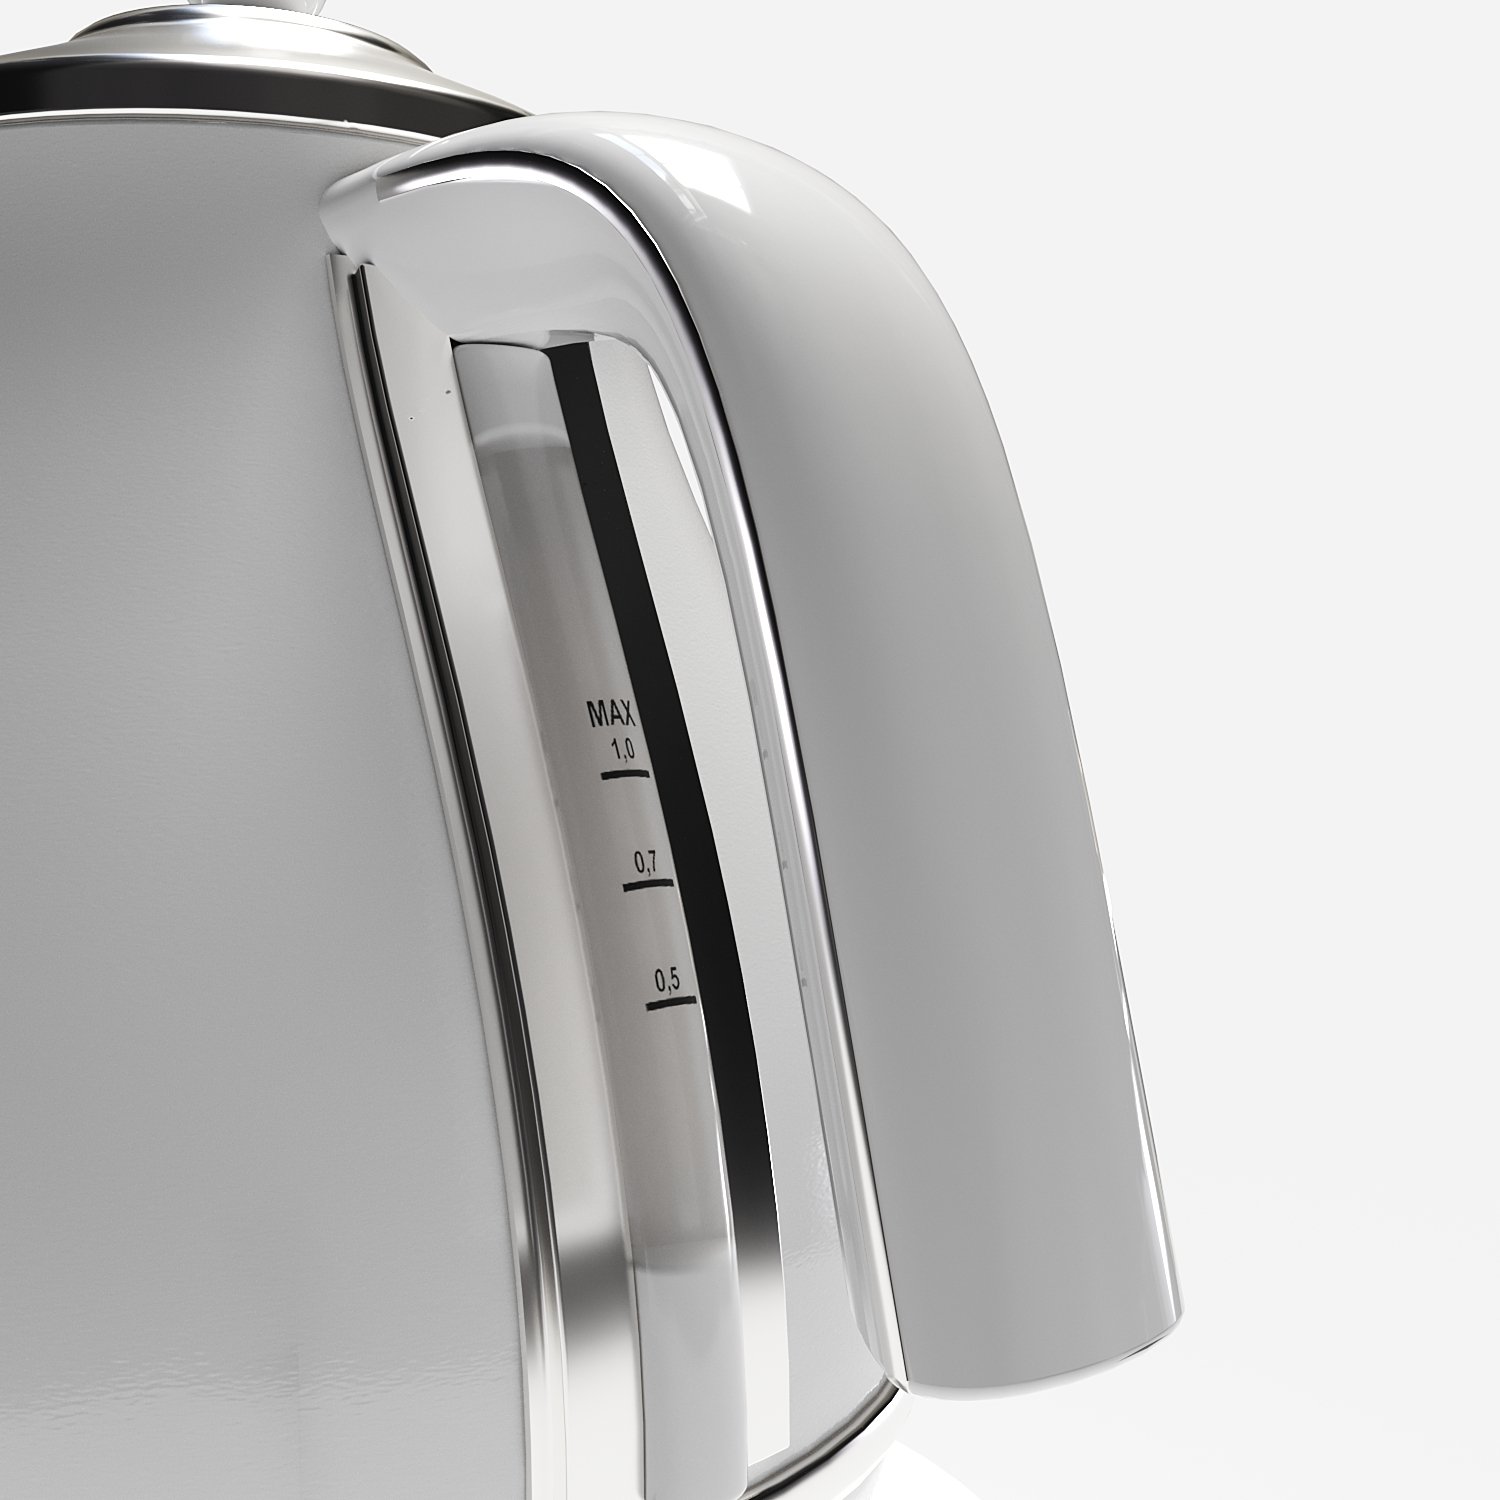 Kettle Delongi KBOE1230J-W 3D Model in Household Appliances 3DExport